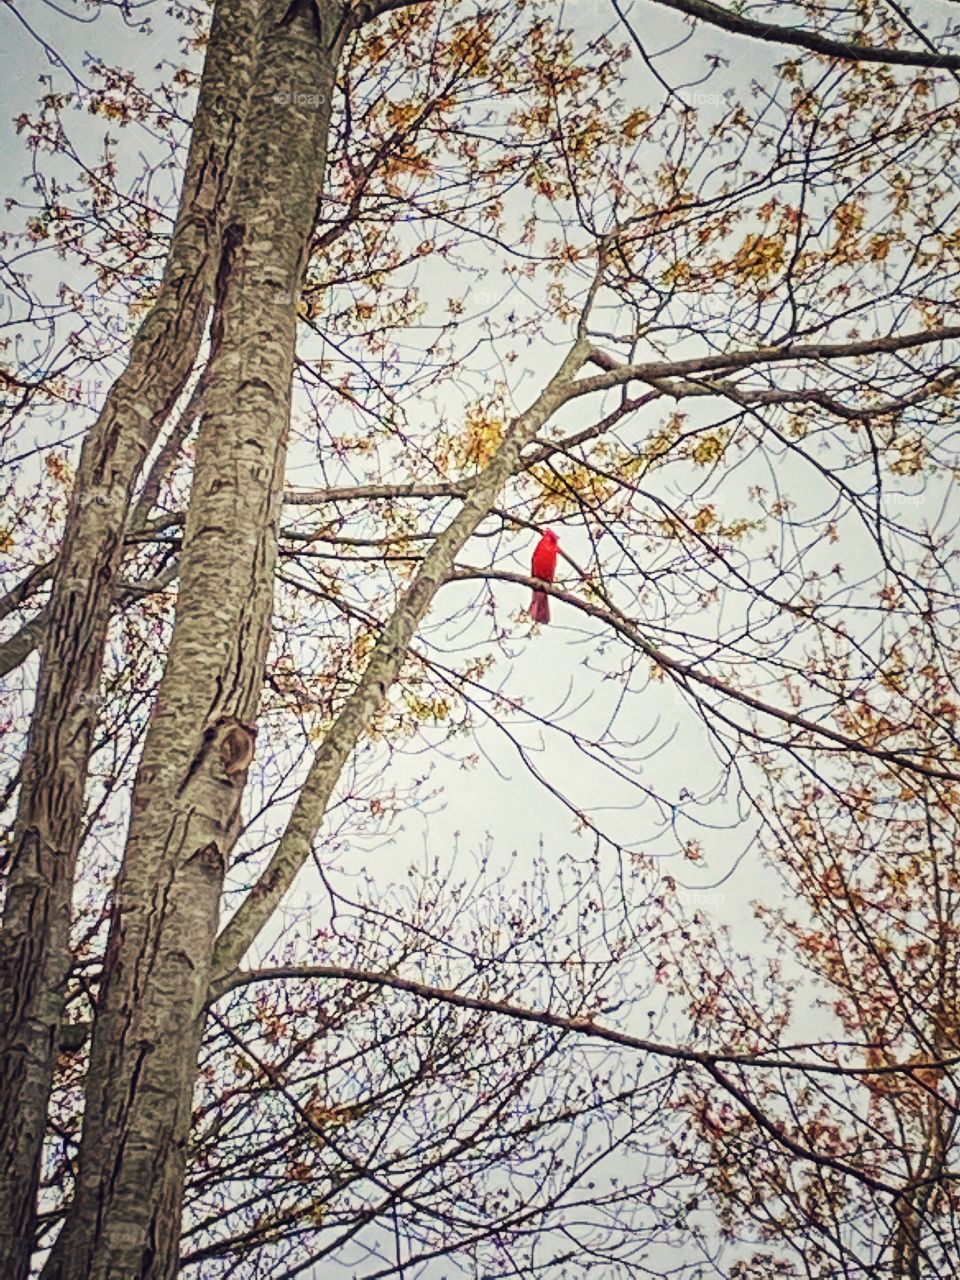 Cardinal singing in tree